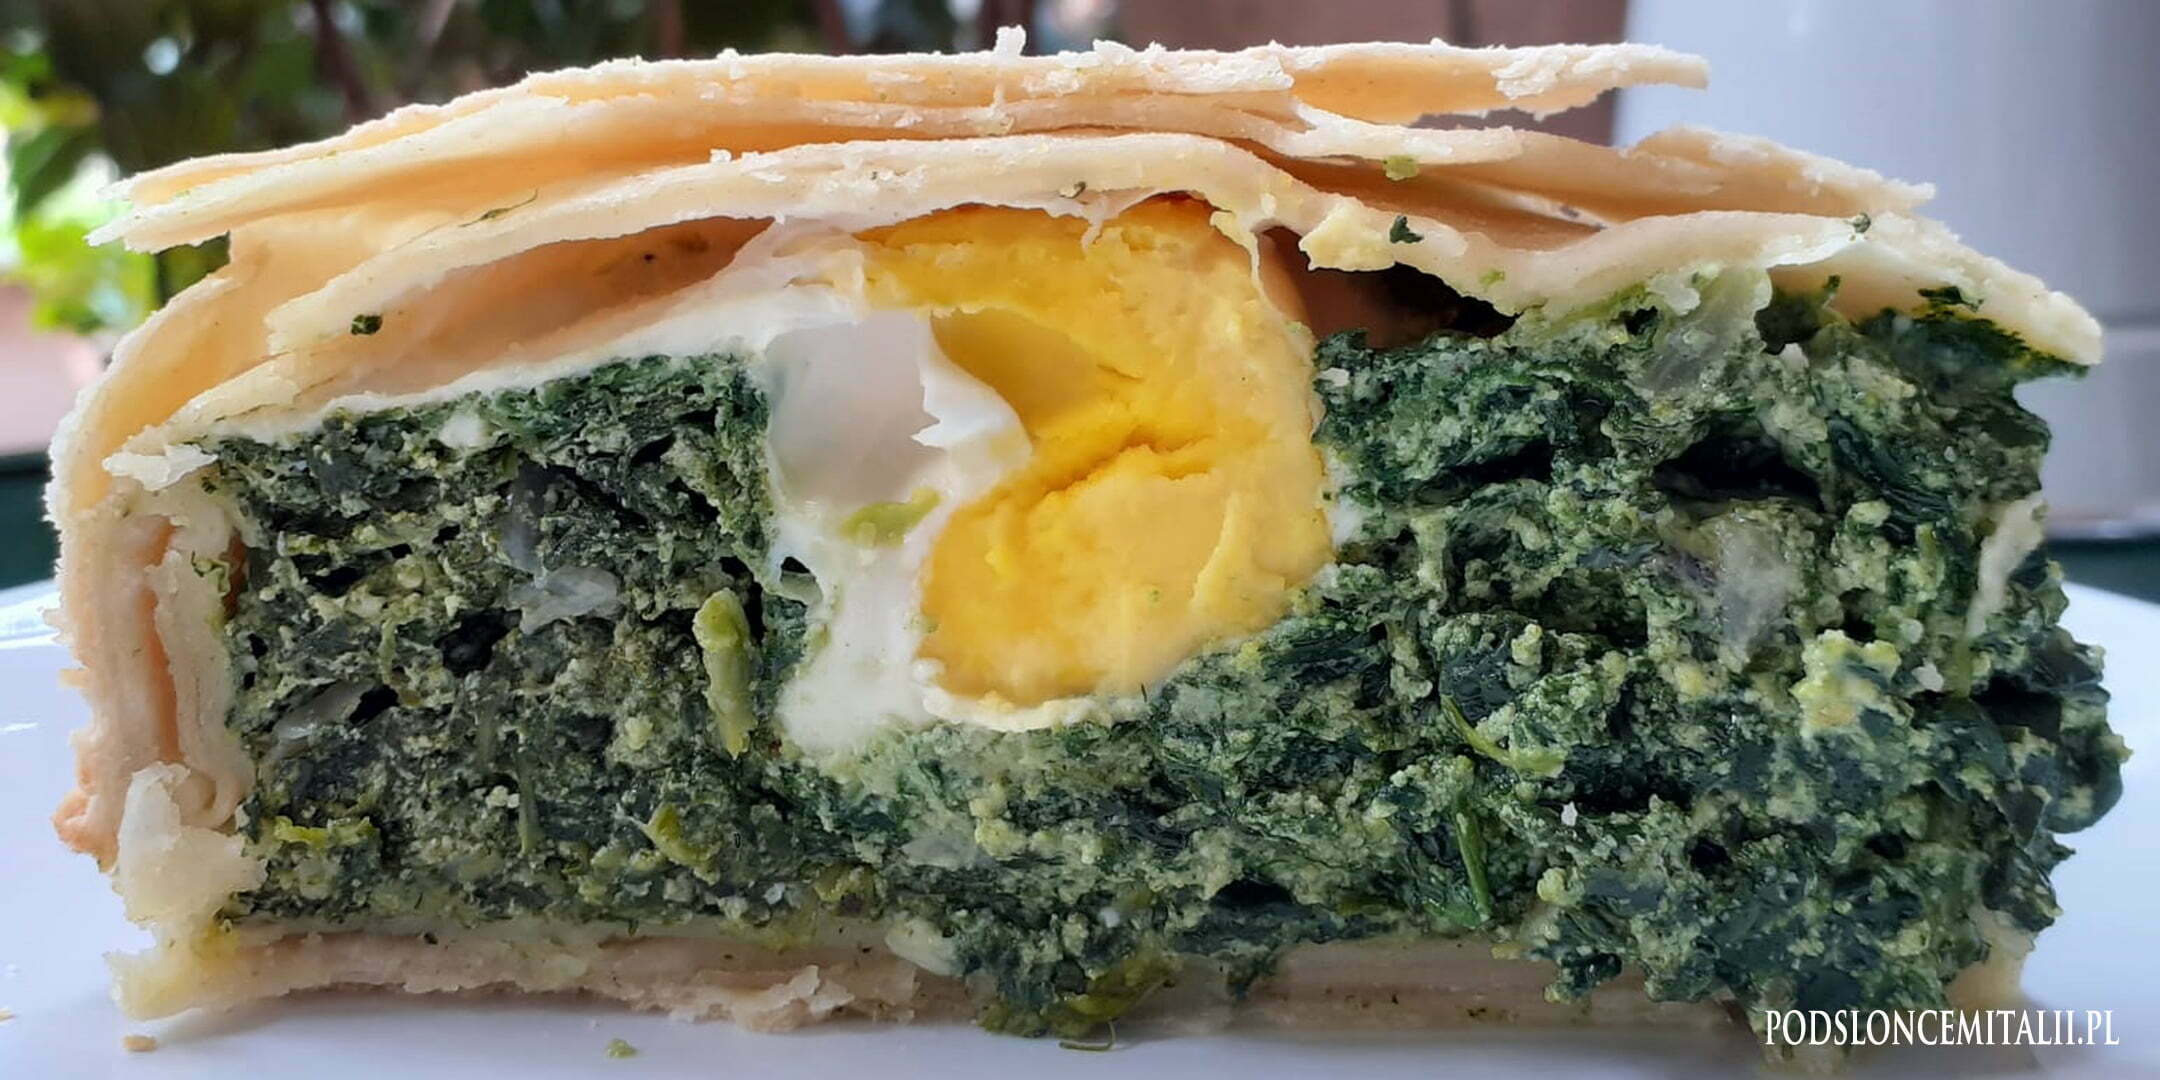 Torta pasqualina - wielkanocny placek wegetariański z Ligurii